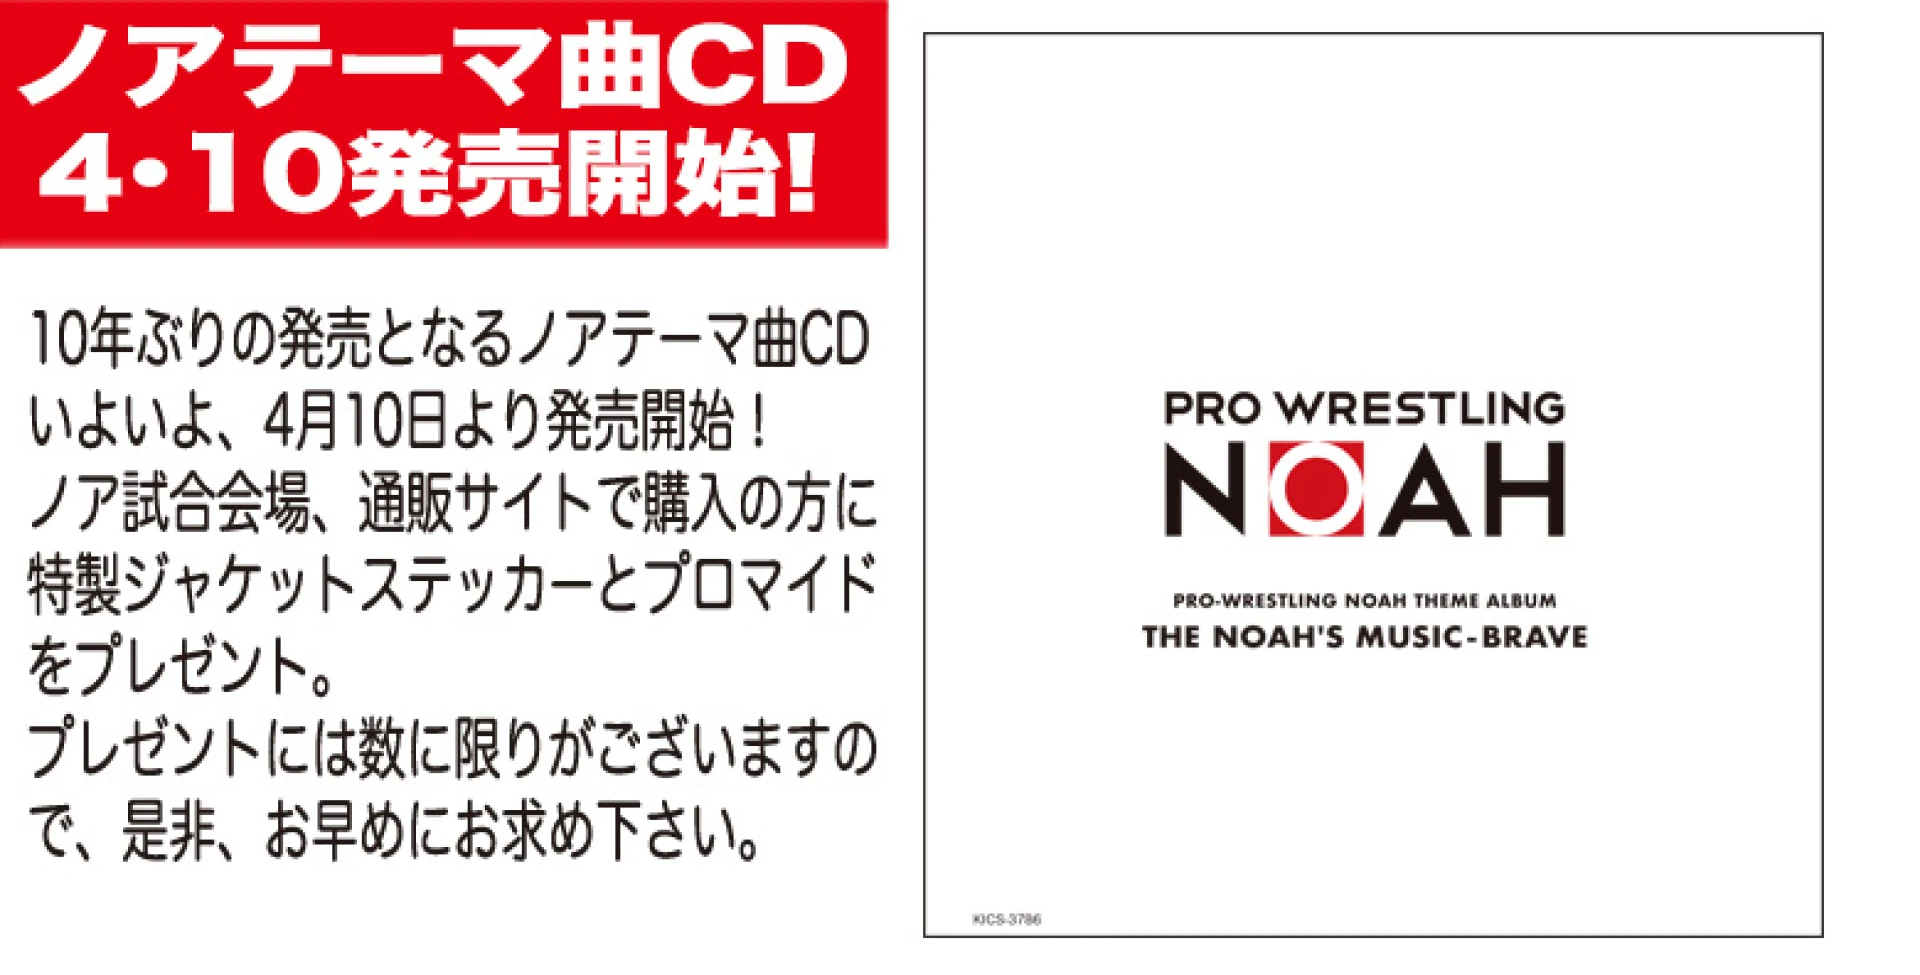 【4月10日 発売開始!】プロレスリング・ノア入場曲CD 発売開始します